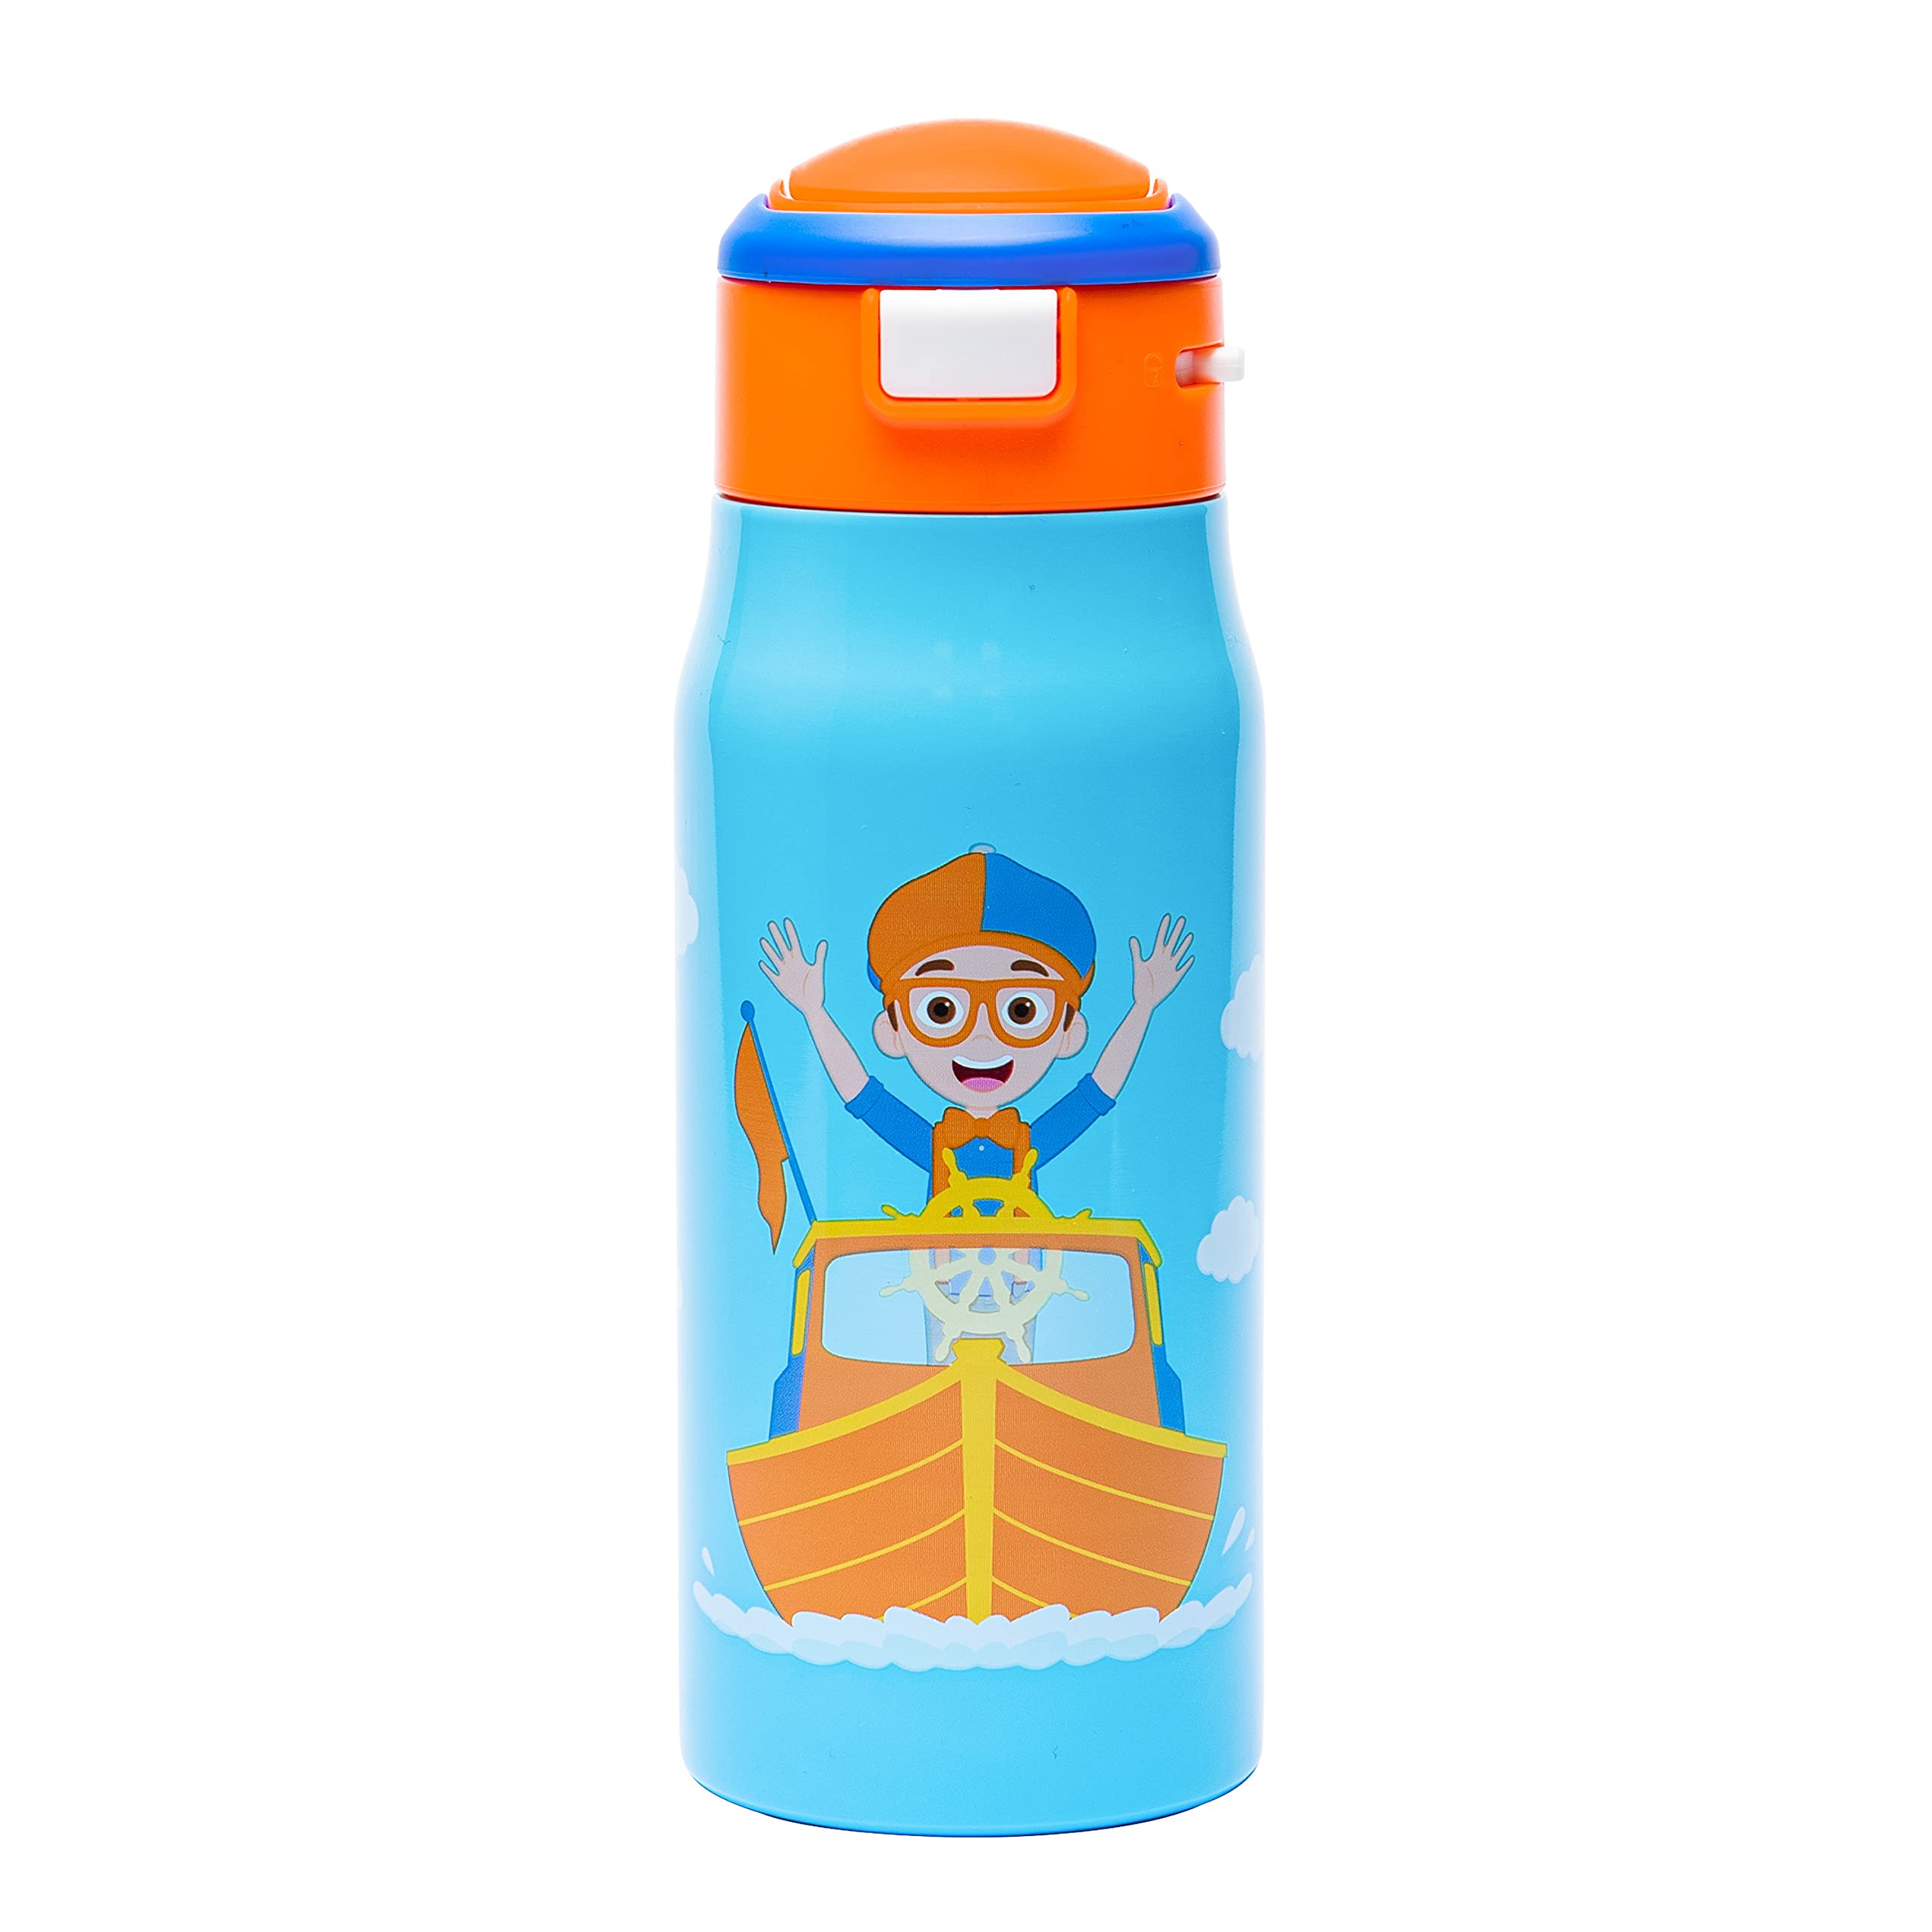 blippi water bottle